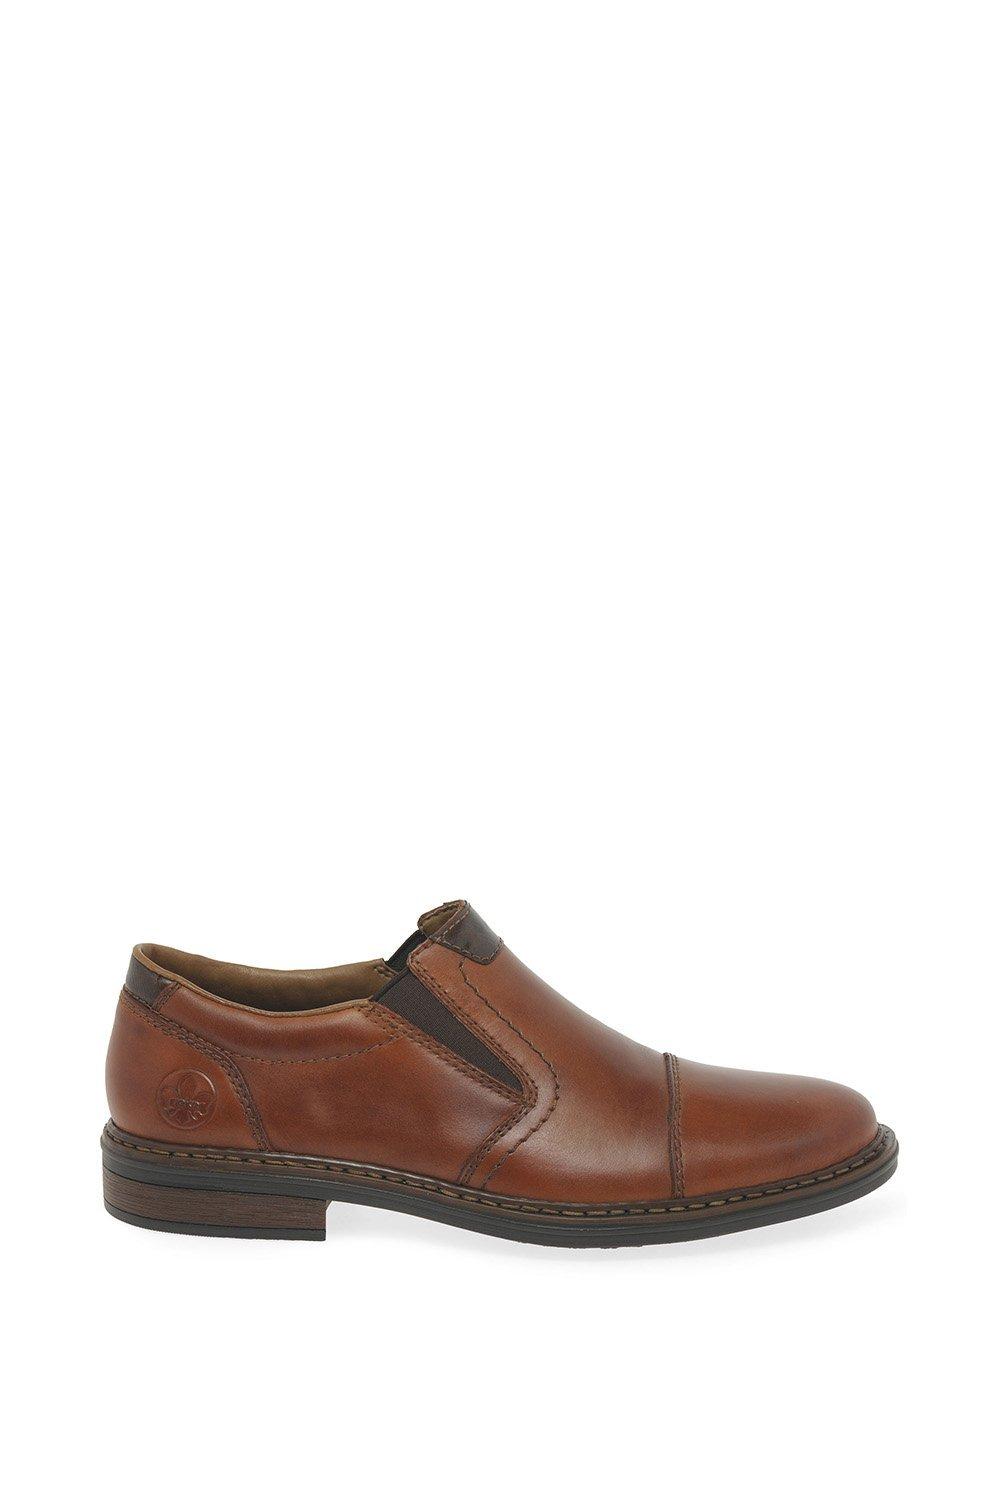 Туфли-слипоны «Колорадо» Rieker, коричневый